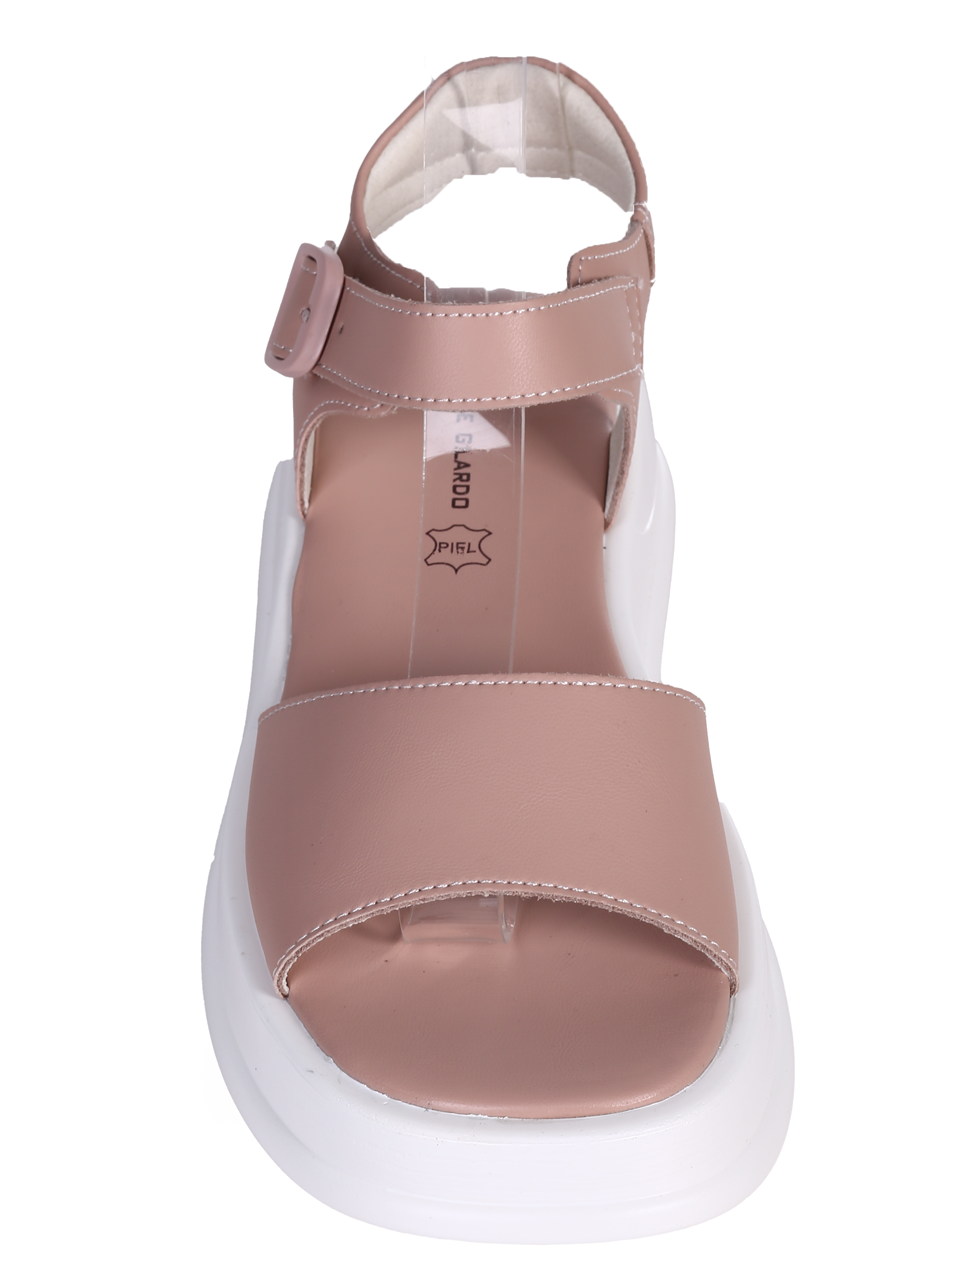 Ежедневни дамски сандали на платформа в розово 4AF-24171 pink